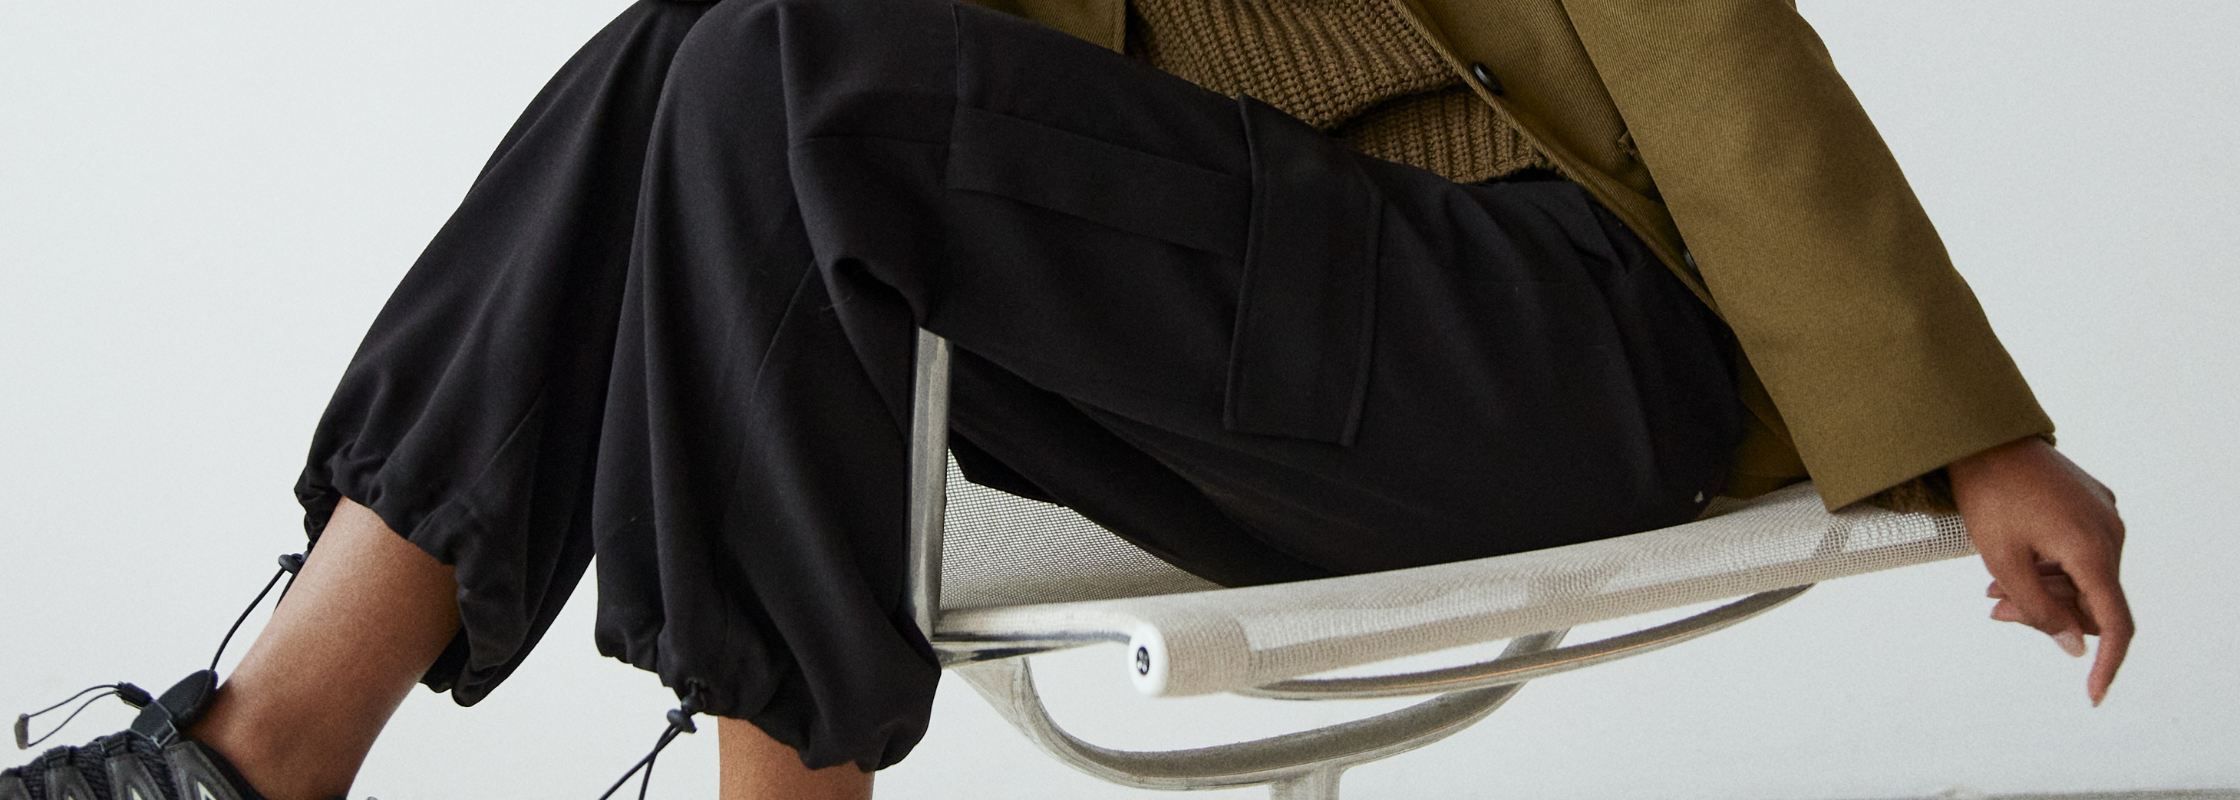 Ontdek waarom cargo broeken voor dames de trend zijn. Combineer stijl met comfort en geef je outfit een edgy touch. Lees meer in deze blogpost! Shop de nieuwe collectie cargo broeken bij dameskleding Boetiek Aniek.